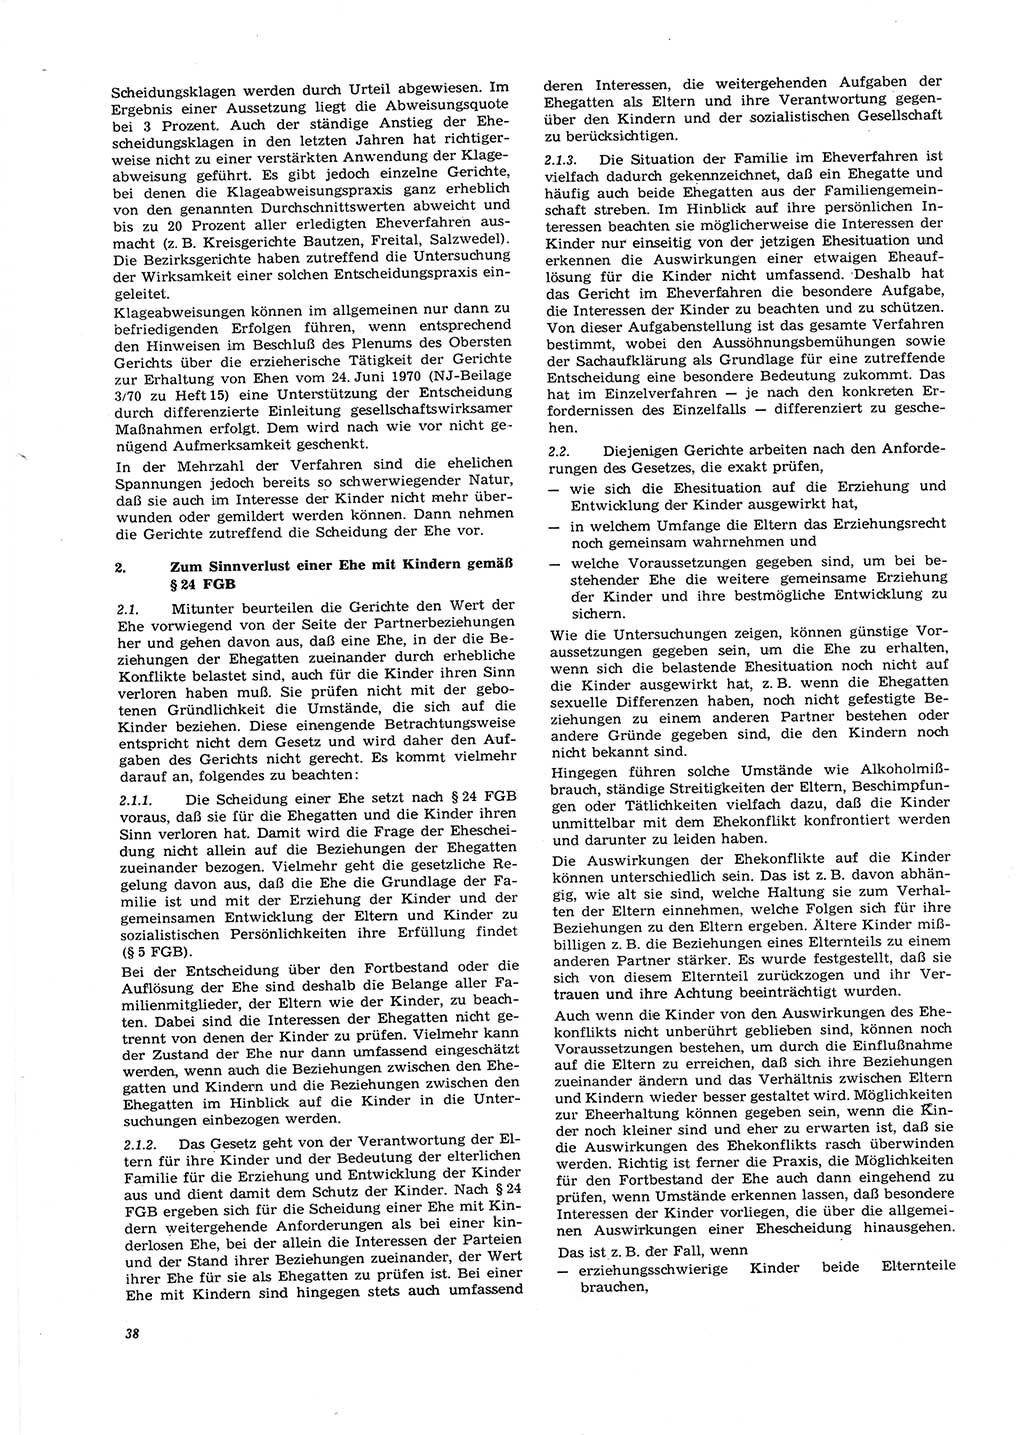 Neue Justiz (NJ), Zeitschrift für Recht und Rechtswissenschaft [Deutsche Demokratische Republik (DDR)], 27. Jahrgang 1973, Seite 38 (NJ DDR 1973, S. 38)